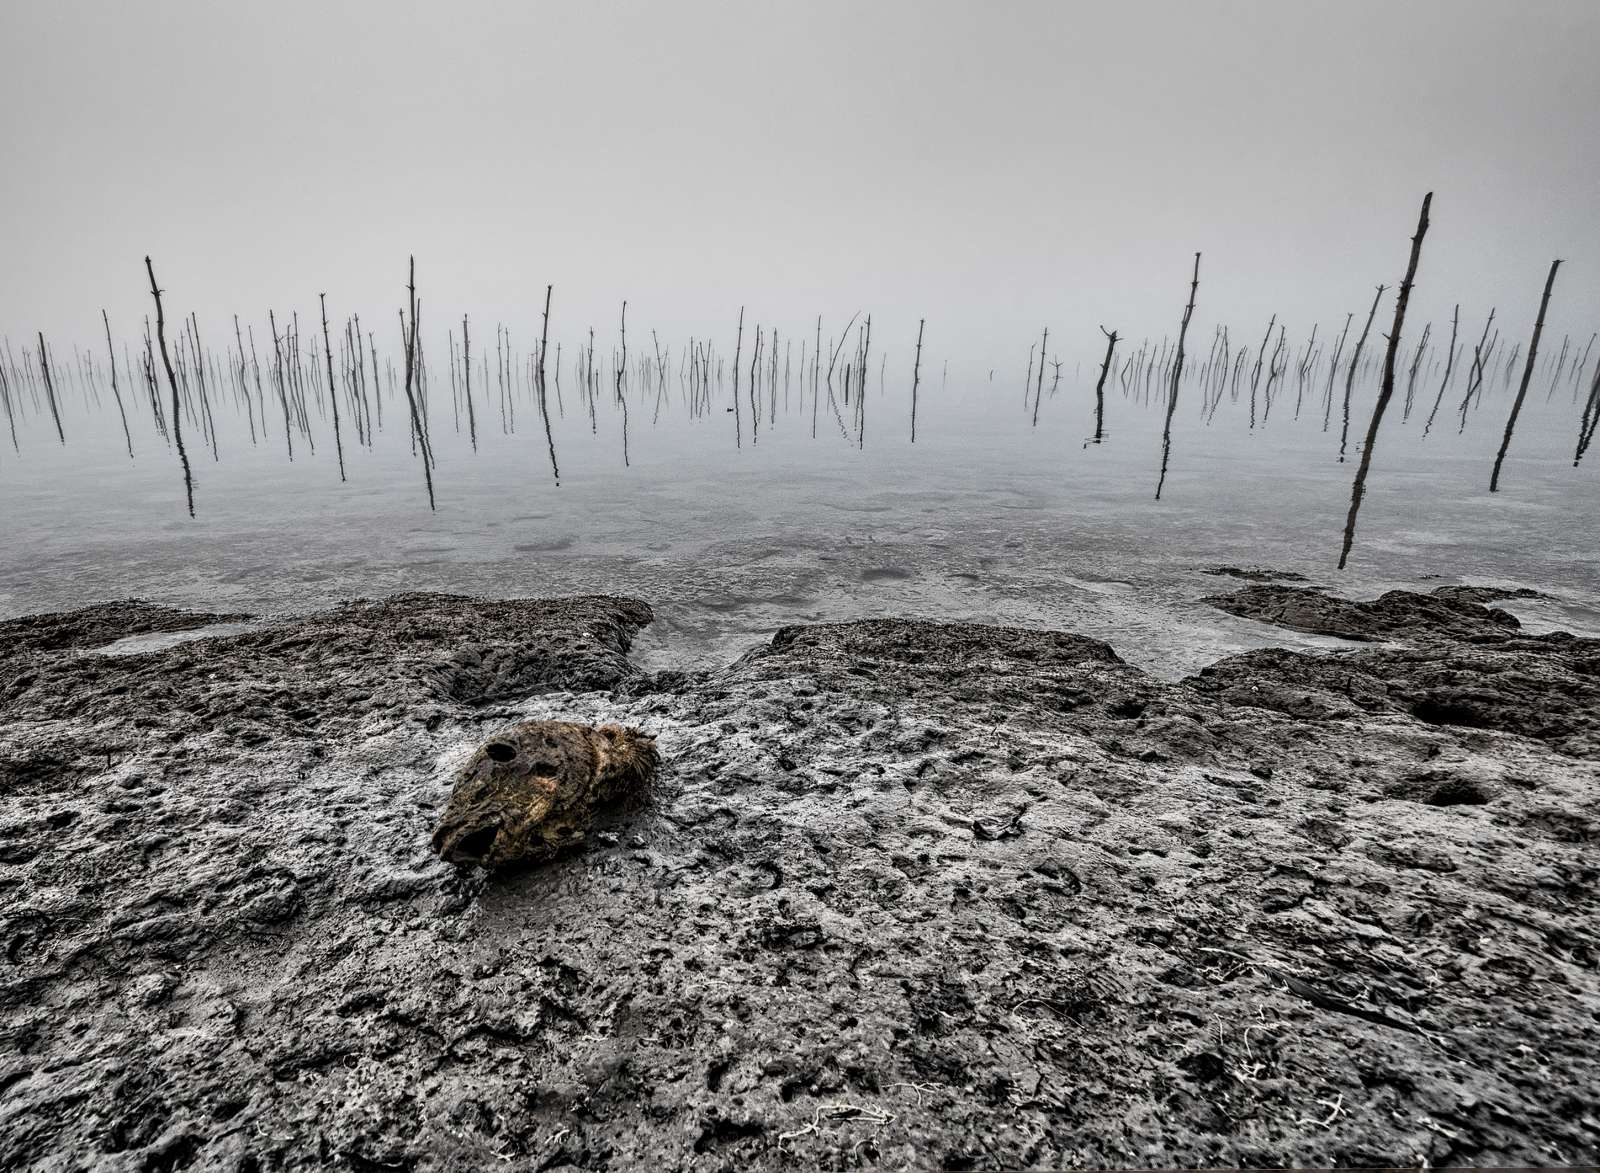 Estas son las fotografías premiadas en el concurso "El agua y la vida" de Argamasilla de Alba